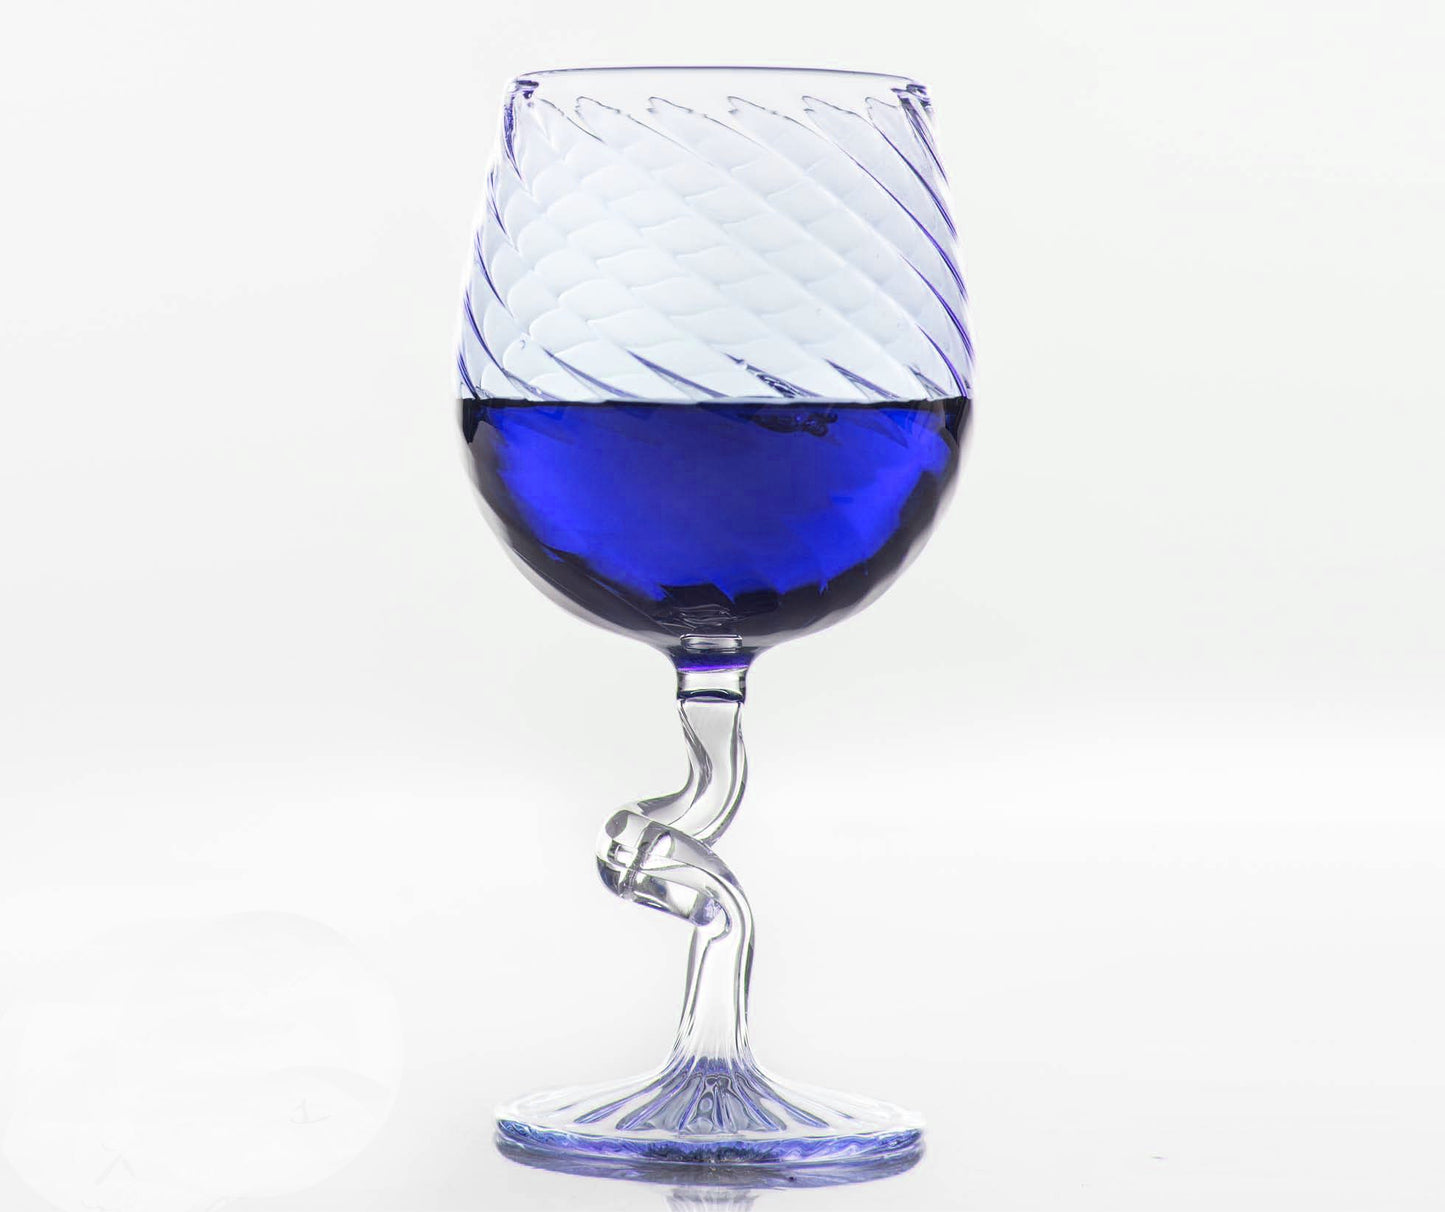 Hand Blown wine glass with stem | Handblown coupe glass | hand painted wine glasses | vintage wine glasses | bar glassware | wine gifts